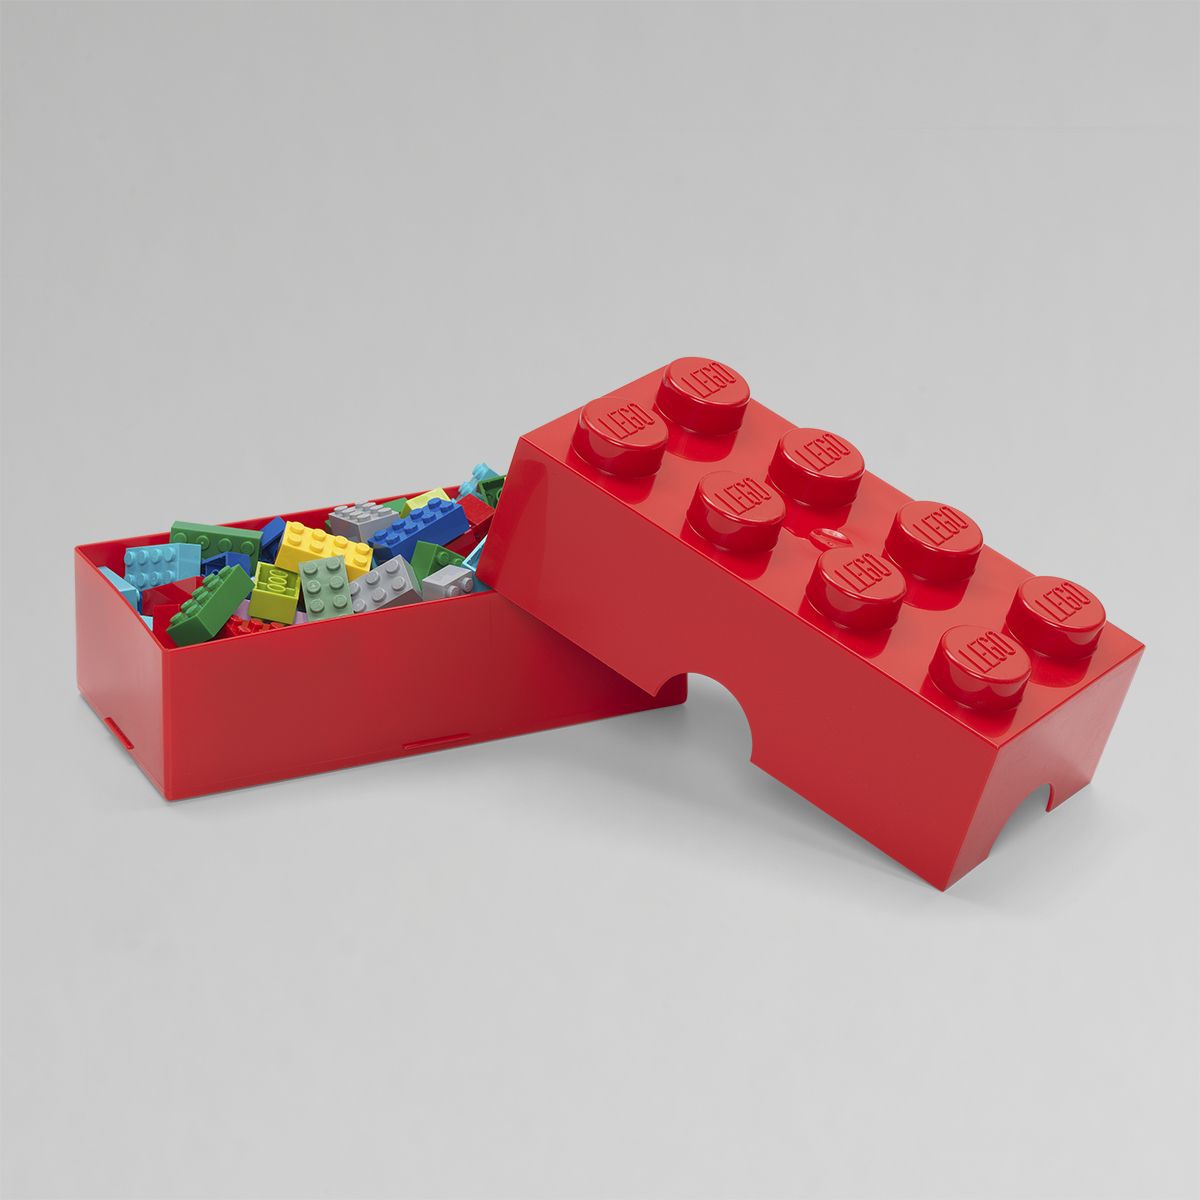 LEGO Lunch Box 8 Knob - Red